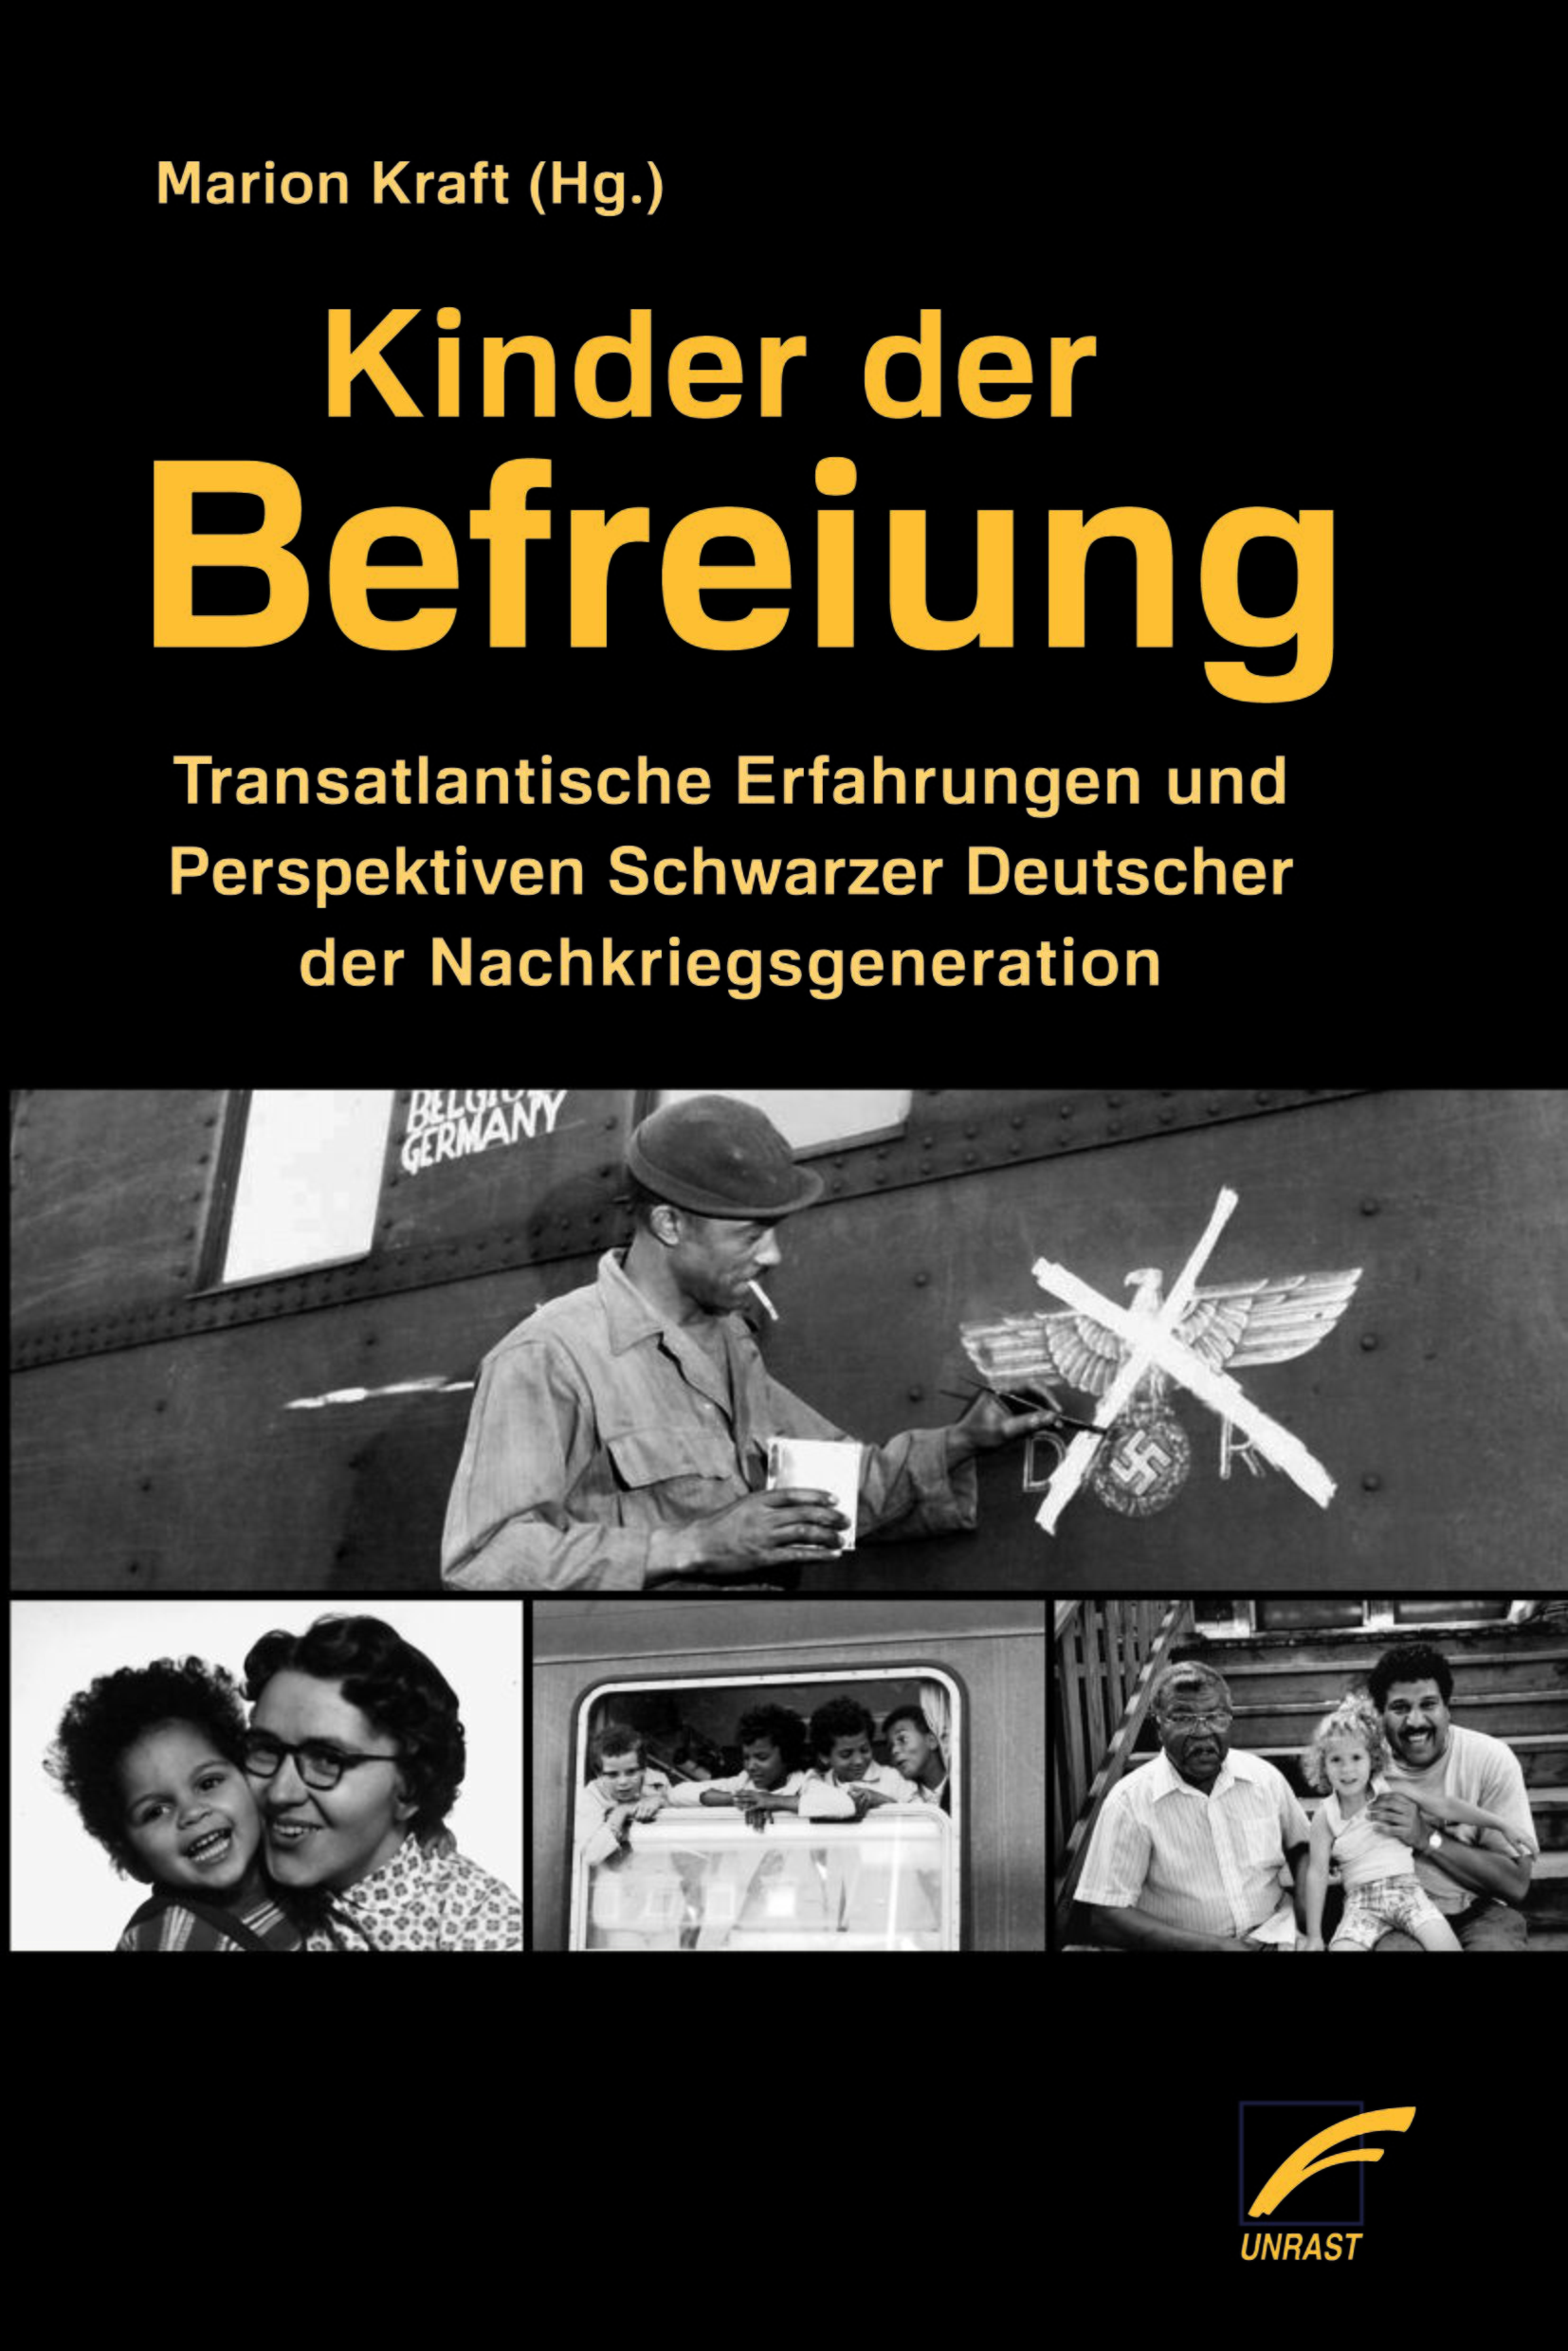 En la antología Kinder der Befreiung (Hijos de la liberación), editada por Marion Kraft, los propios afectados hablan de su vida y sus experiencias en la Alemania de la posguerra.